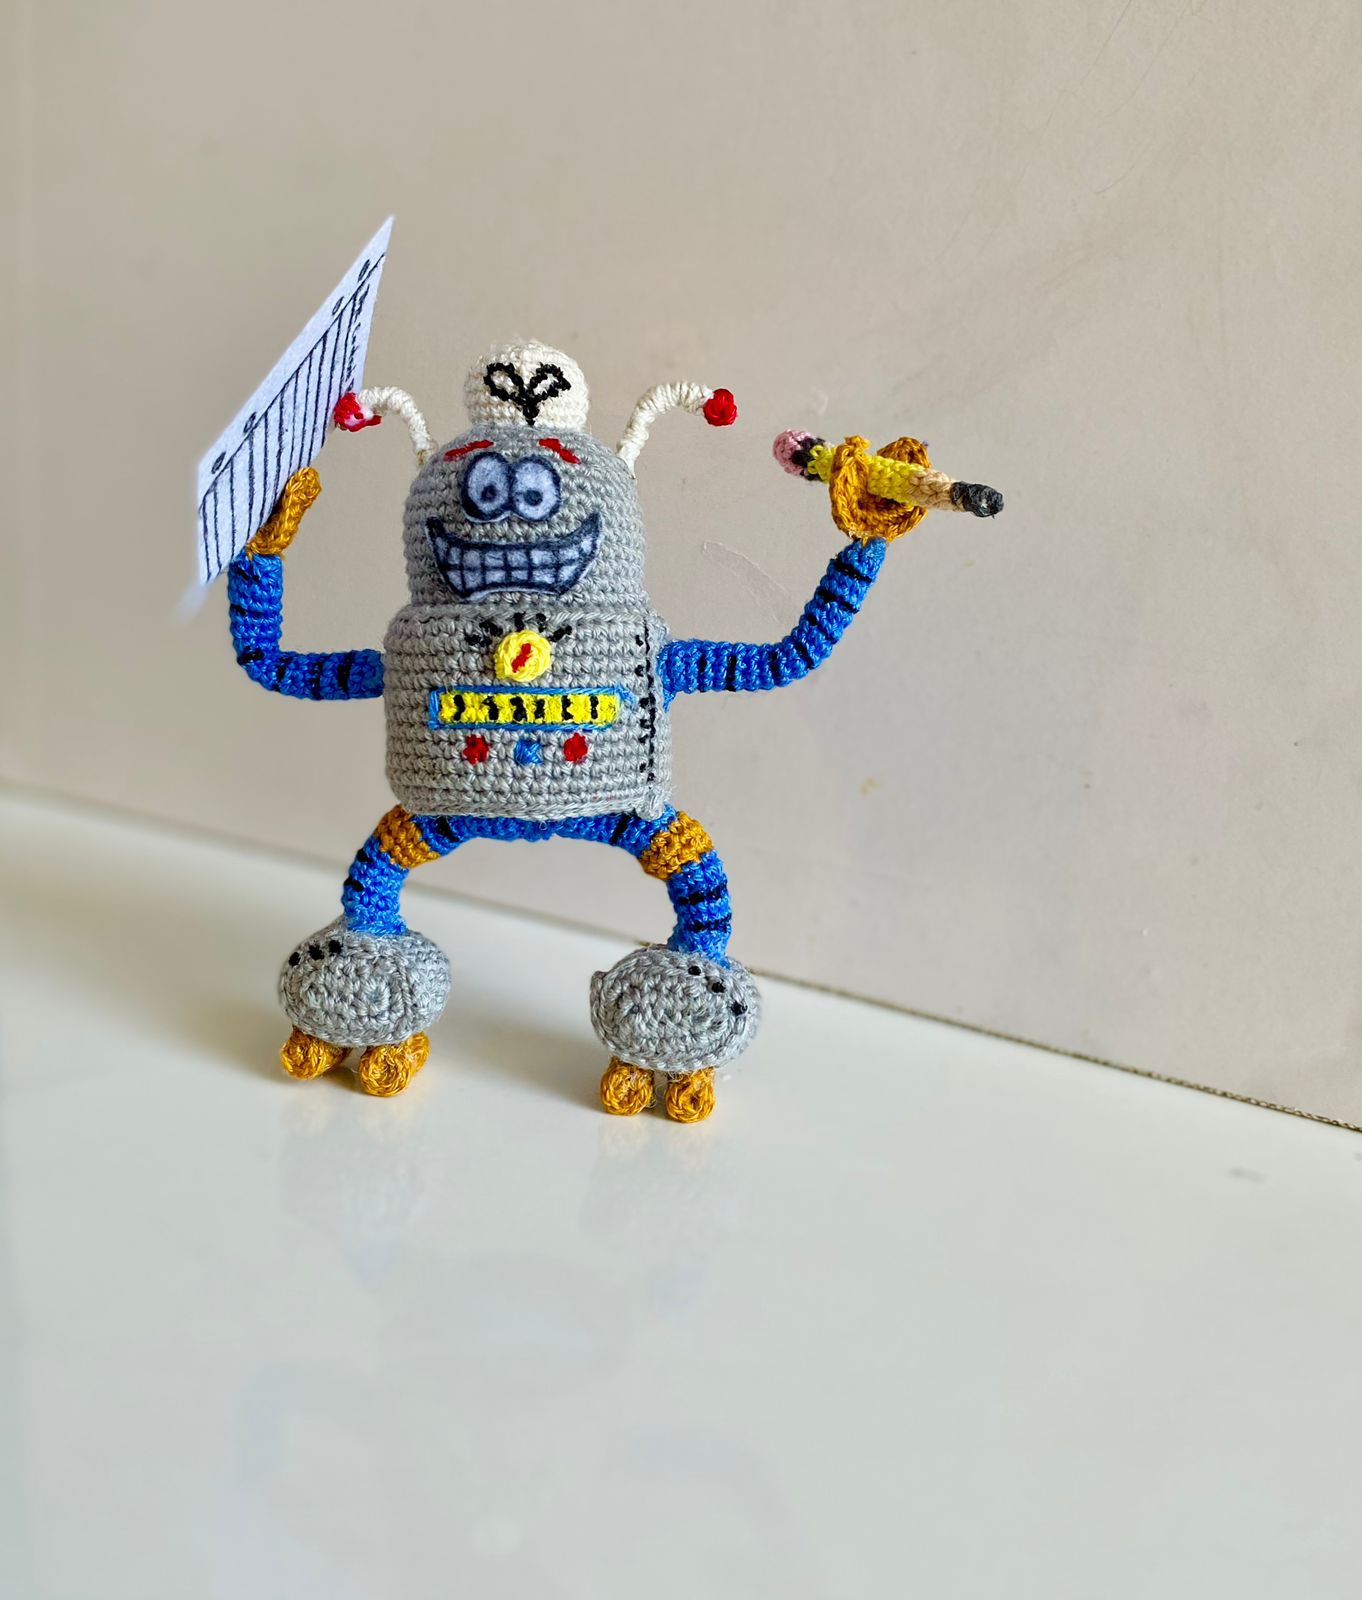 Crocheted Robo-Buddy